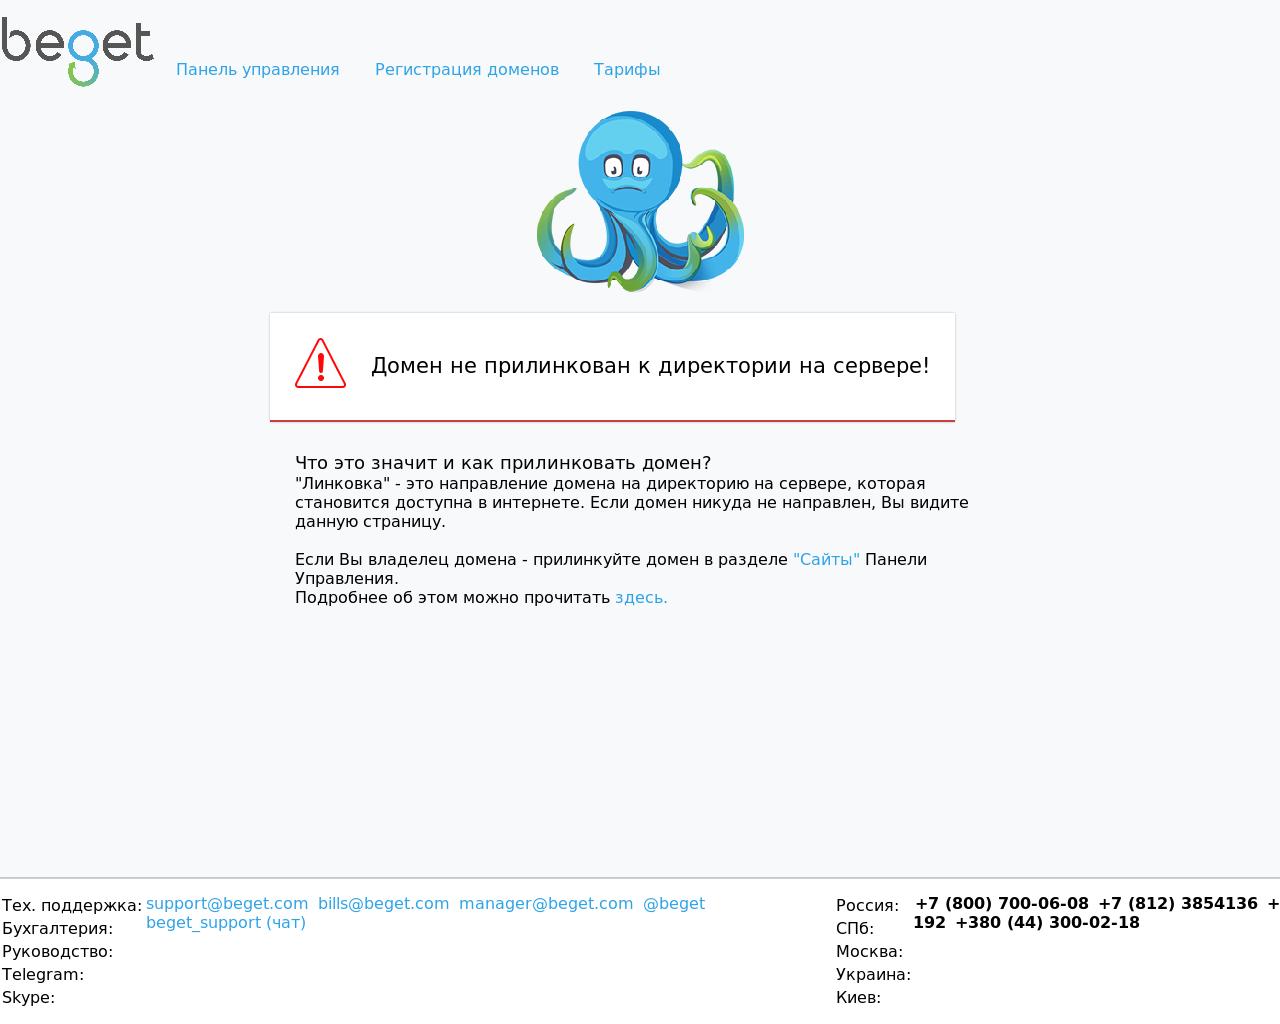 Изображение сайта timcraft.ru в разрешении 1280x1024